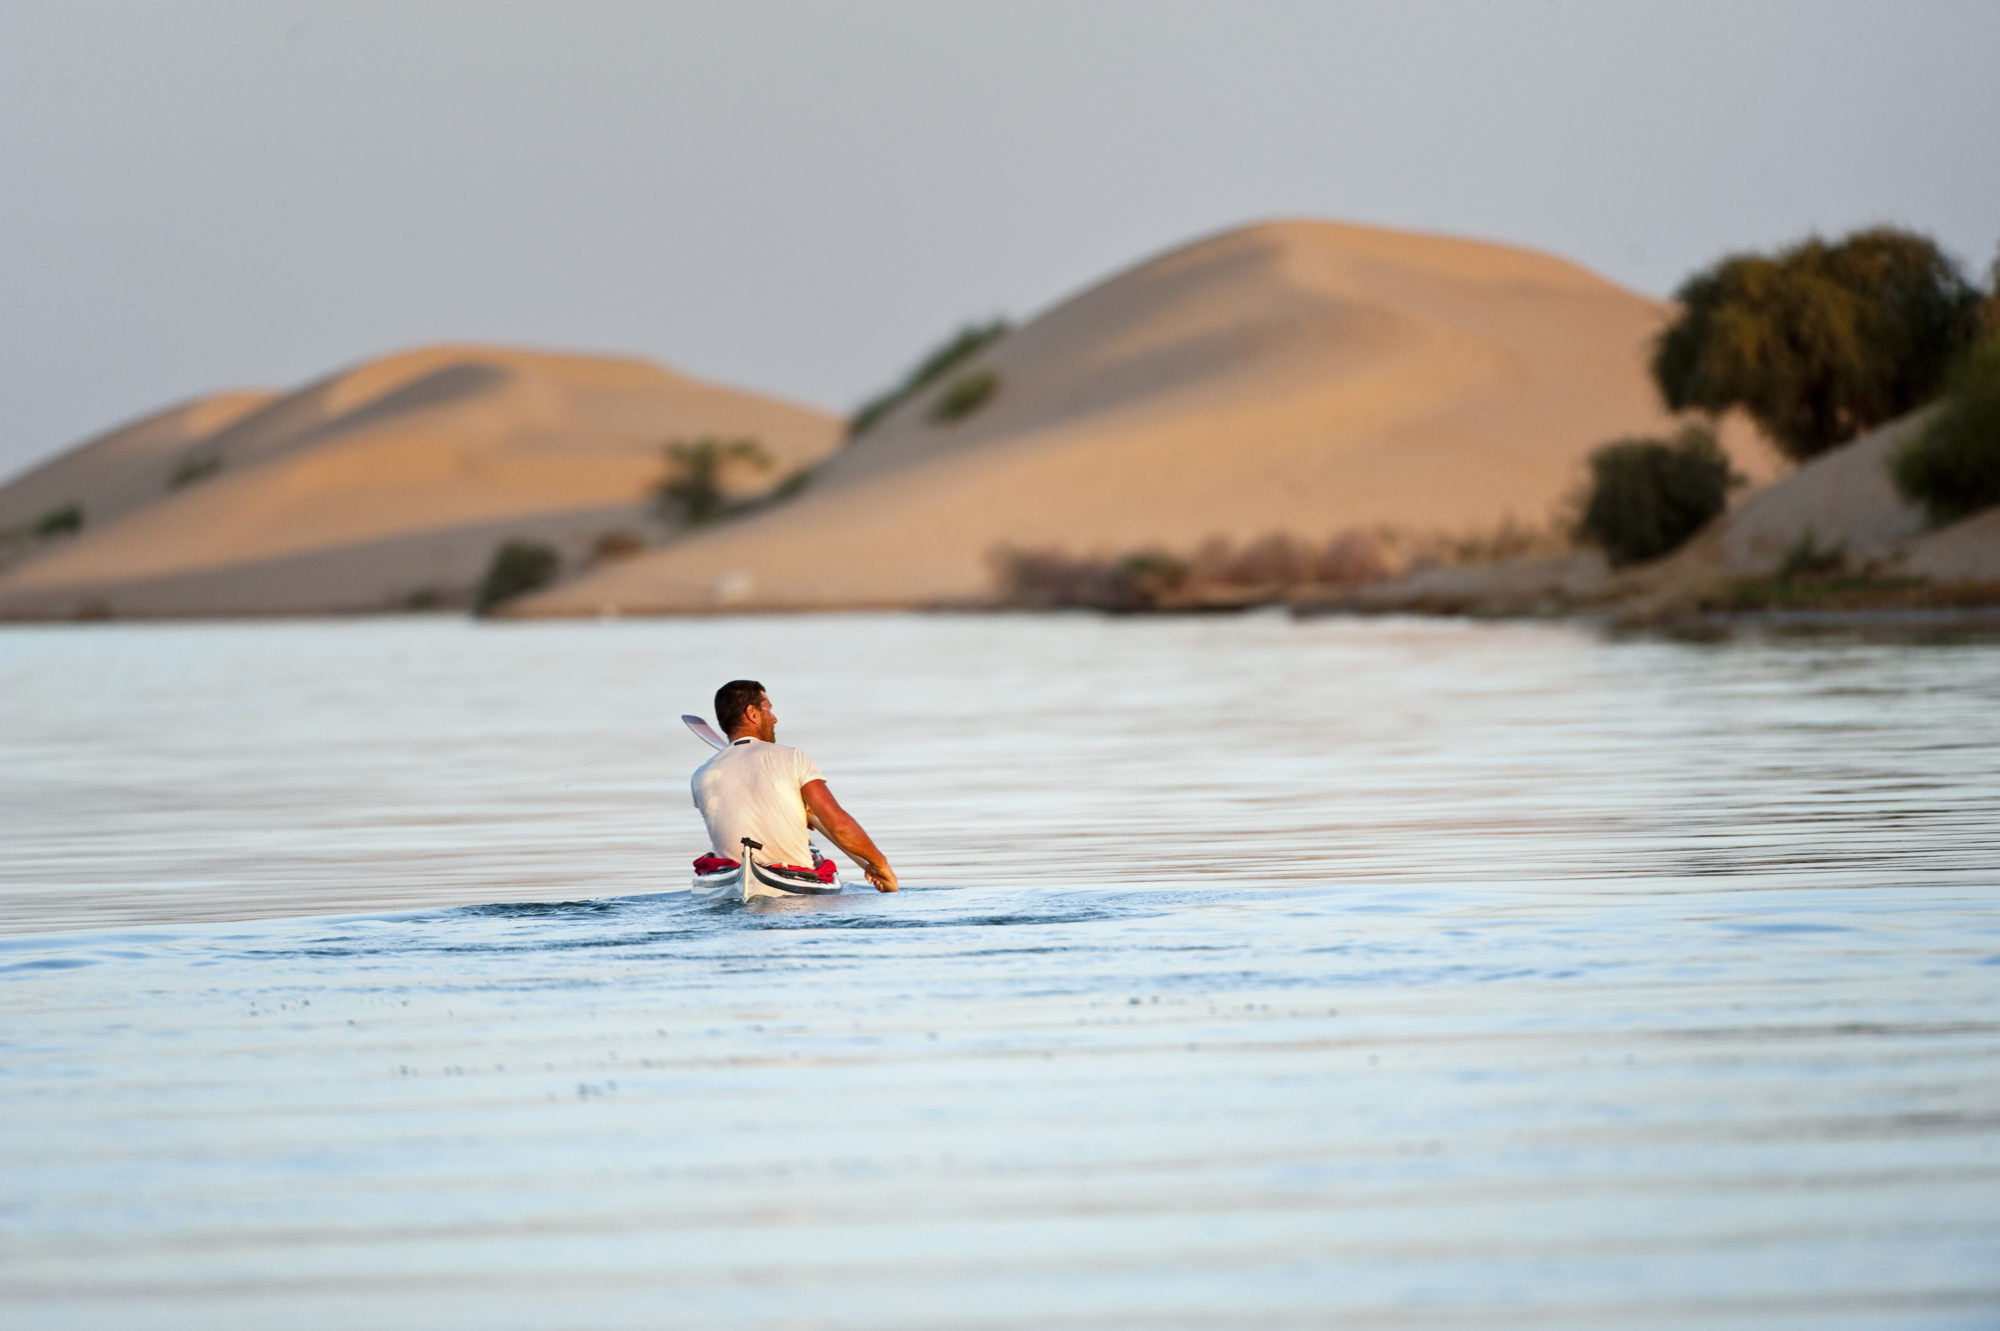 Foto di Aldo Mazzocchi in canoa sul fiume Niger